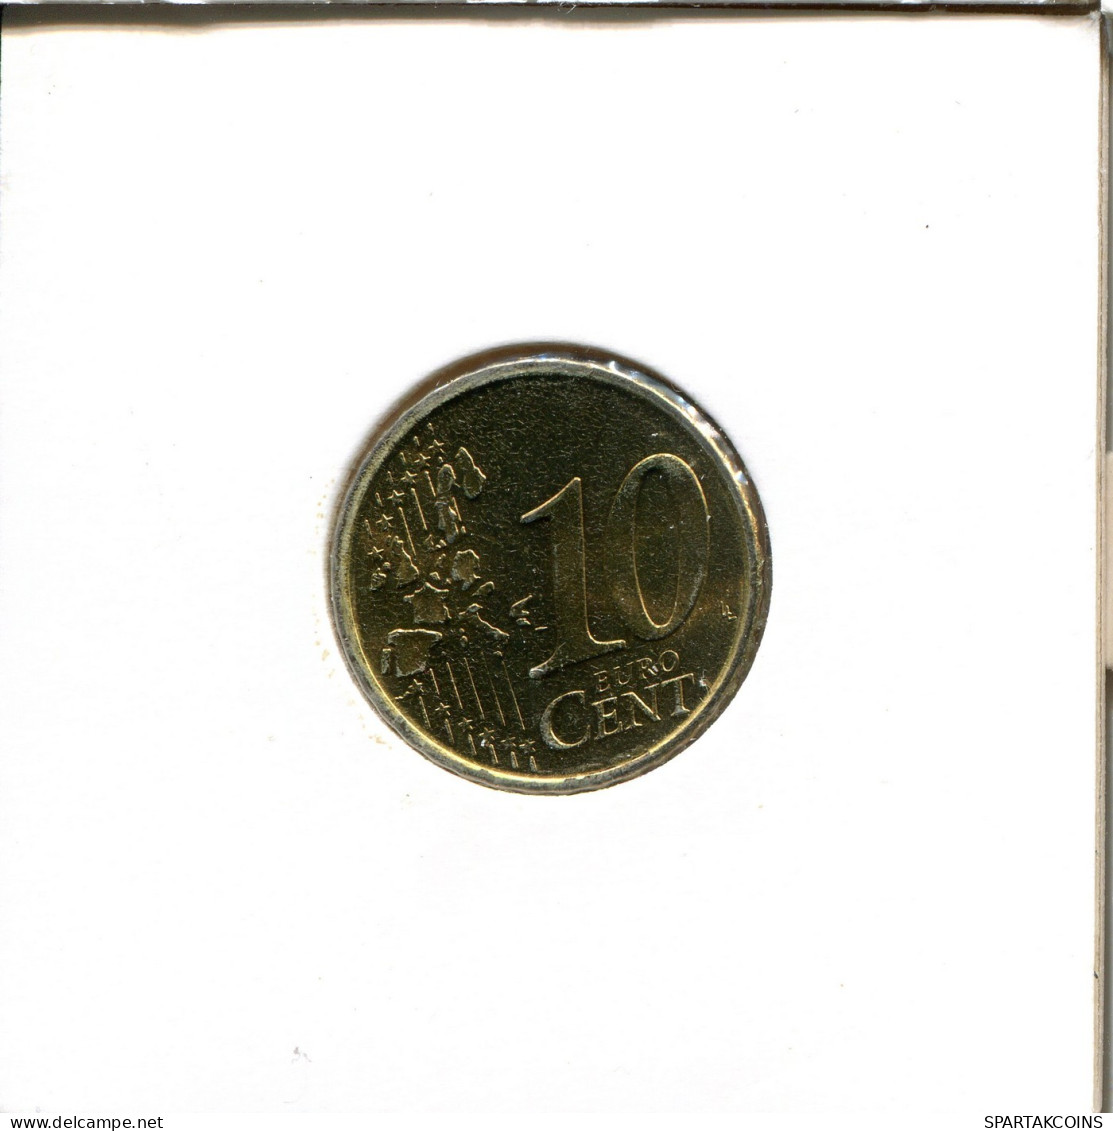 10 EURO CENTS 2006 ESPAÑA Moneda SPAIN #EU558.E.A - Spain